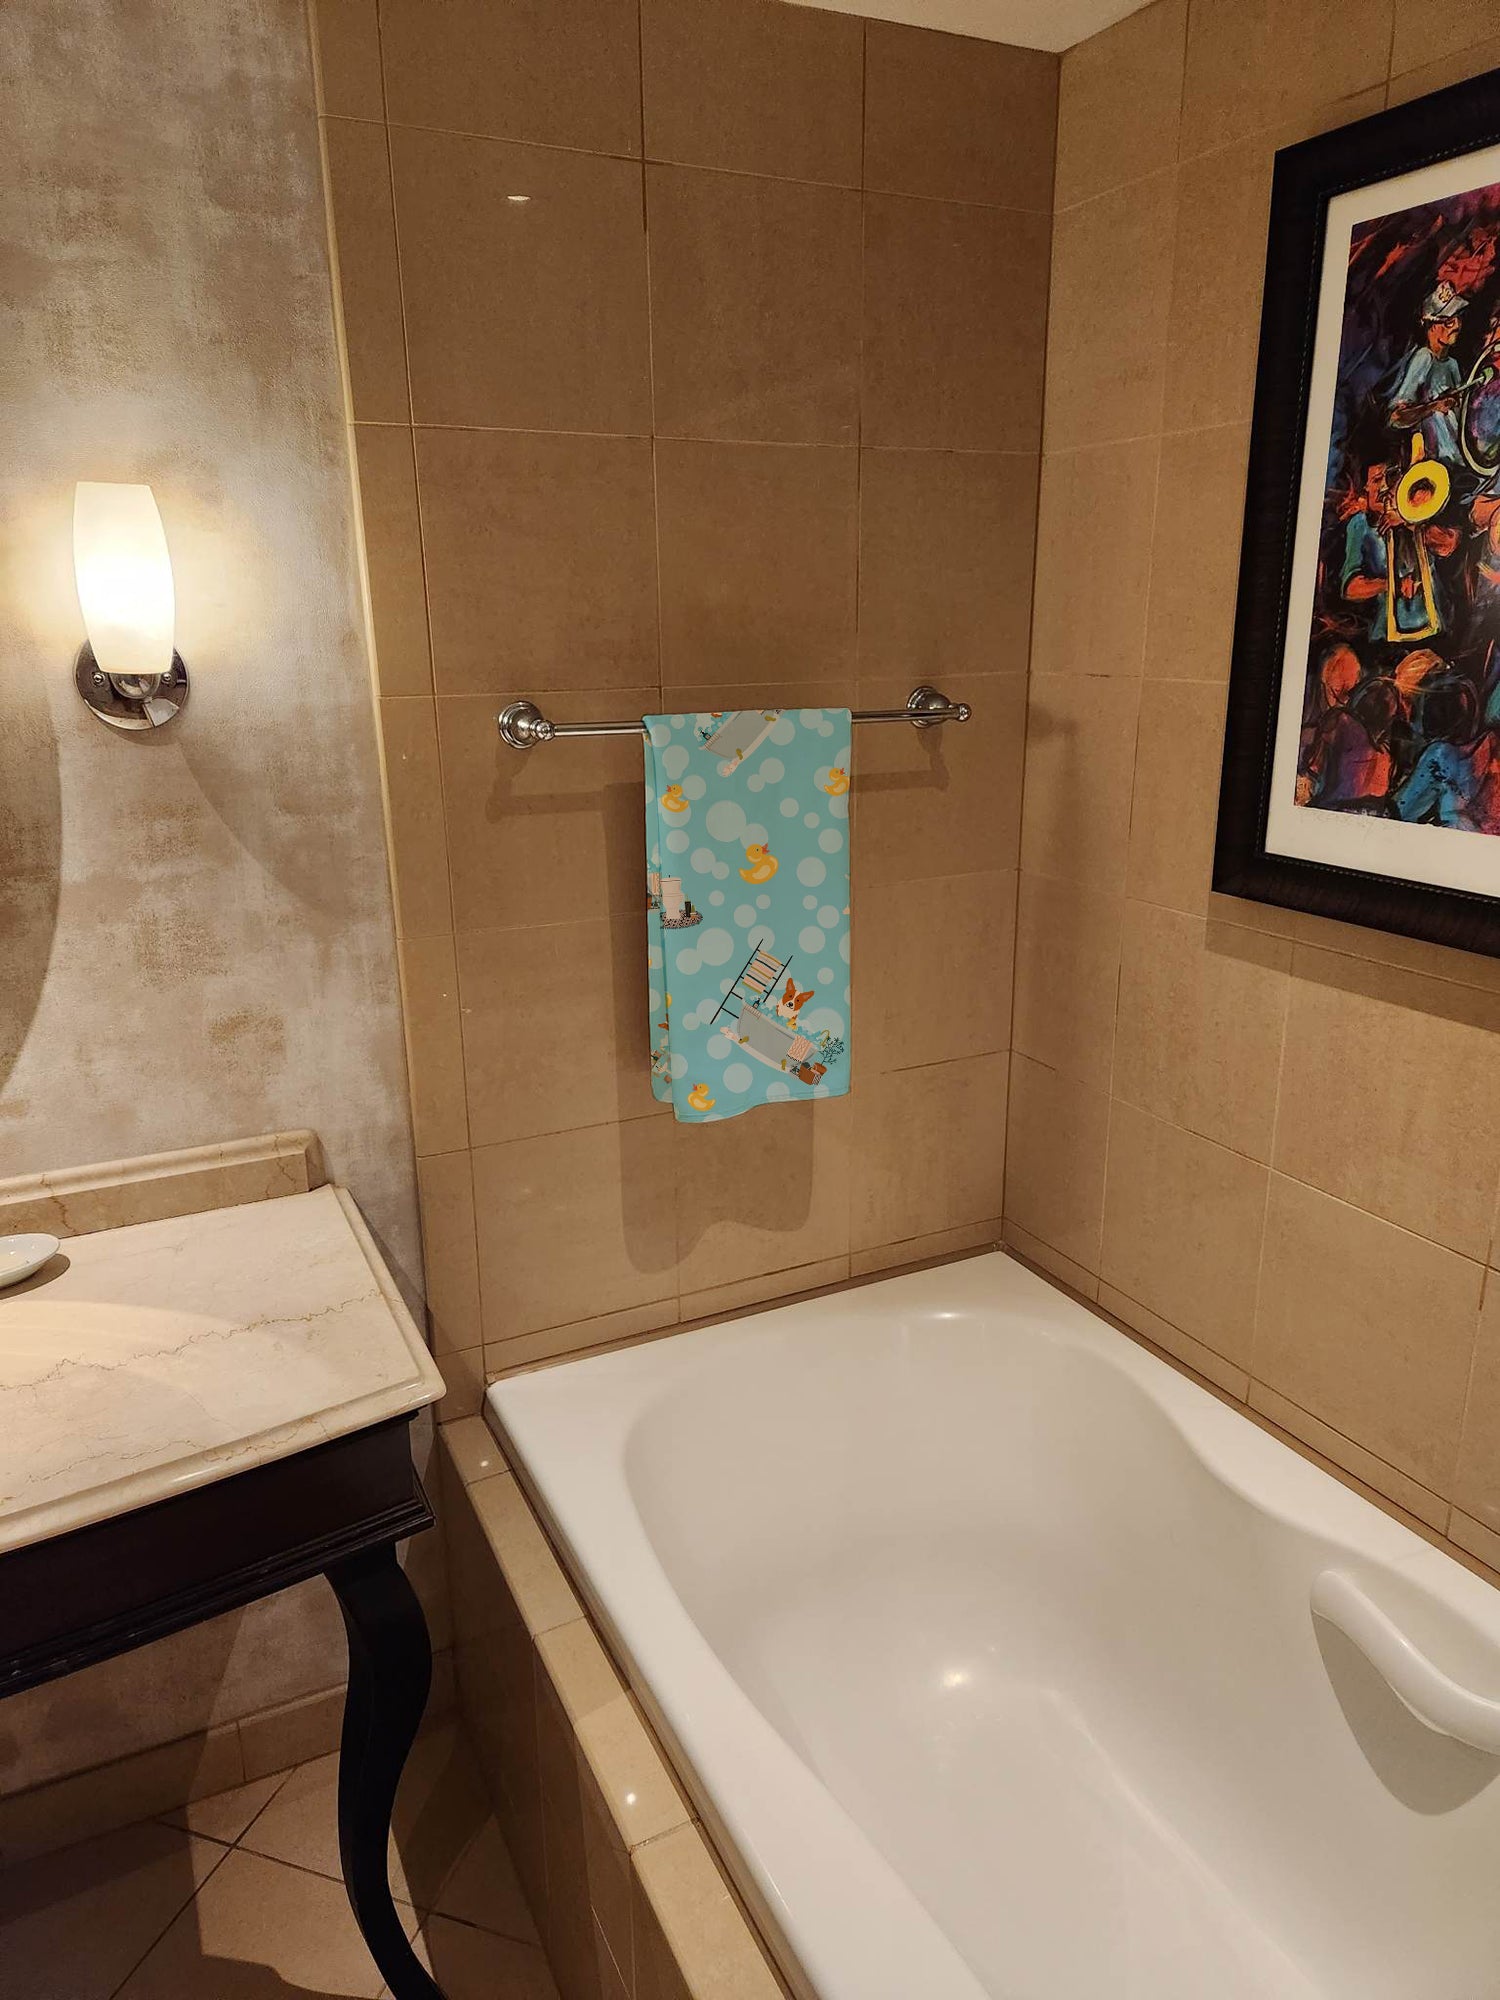 Corgi in Bathtub Bath Towel Large